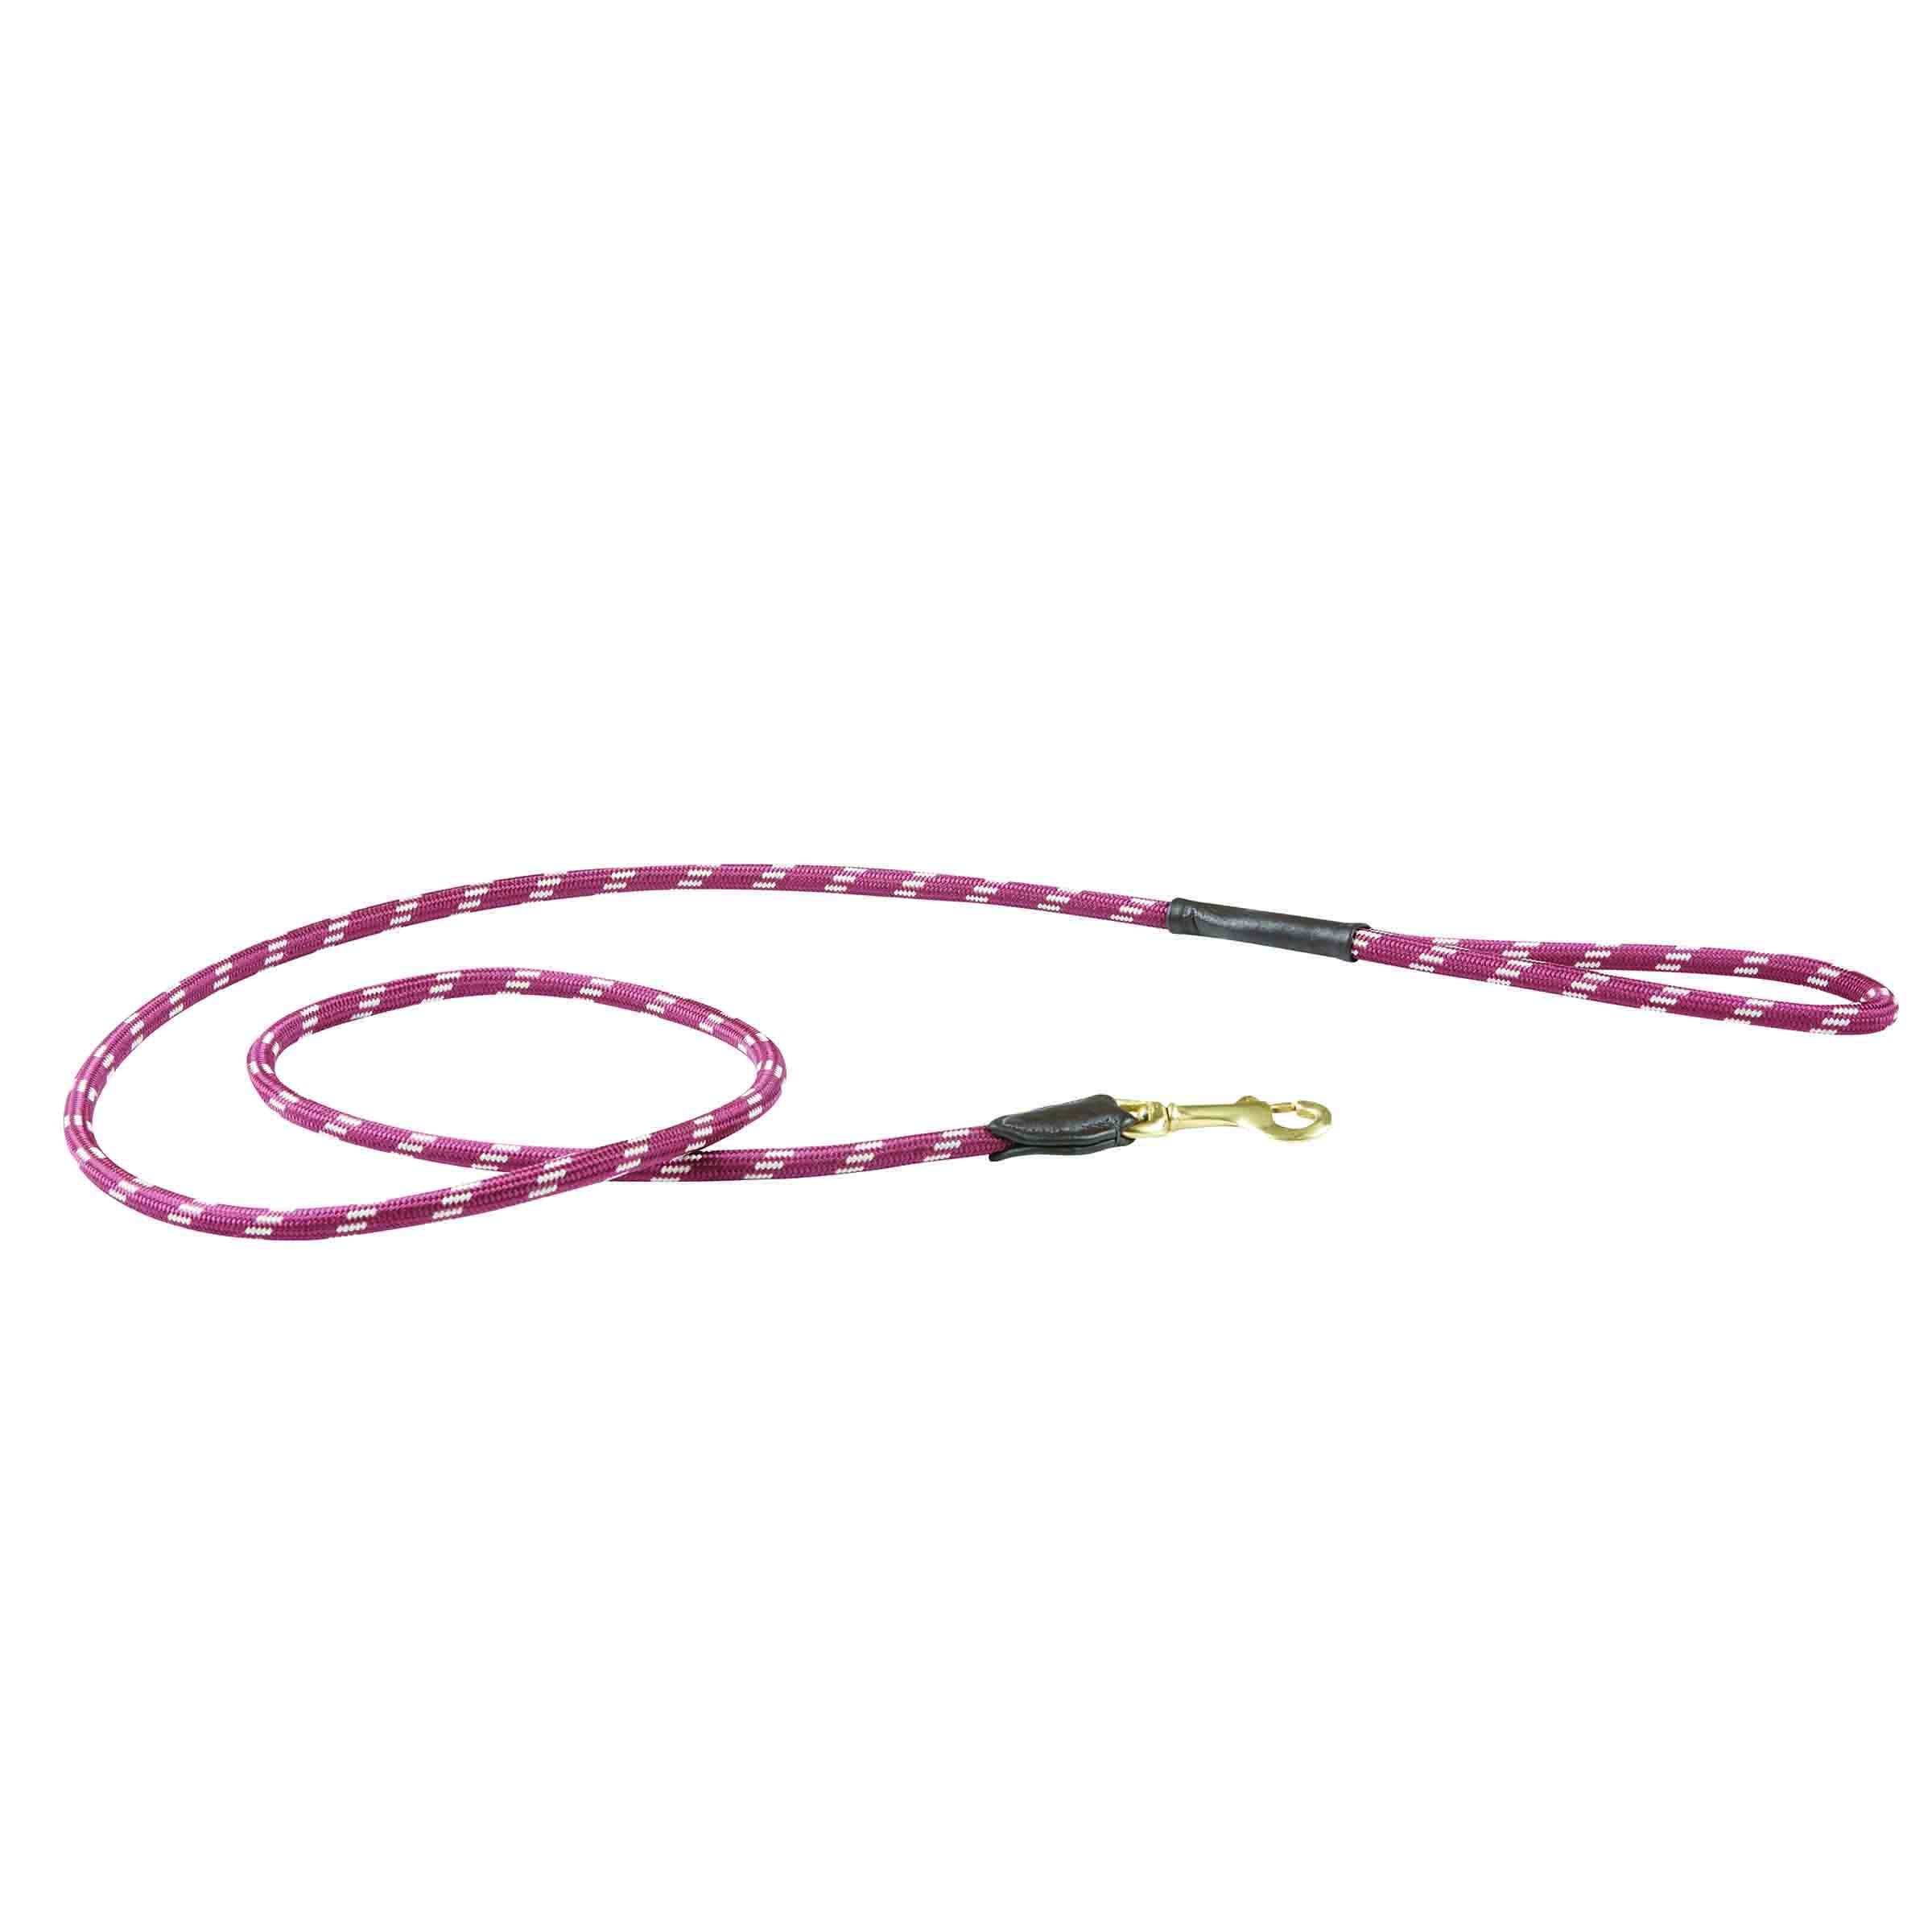 Hundeleine Rope-Leder, diverse Farben